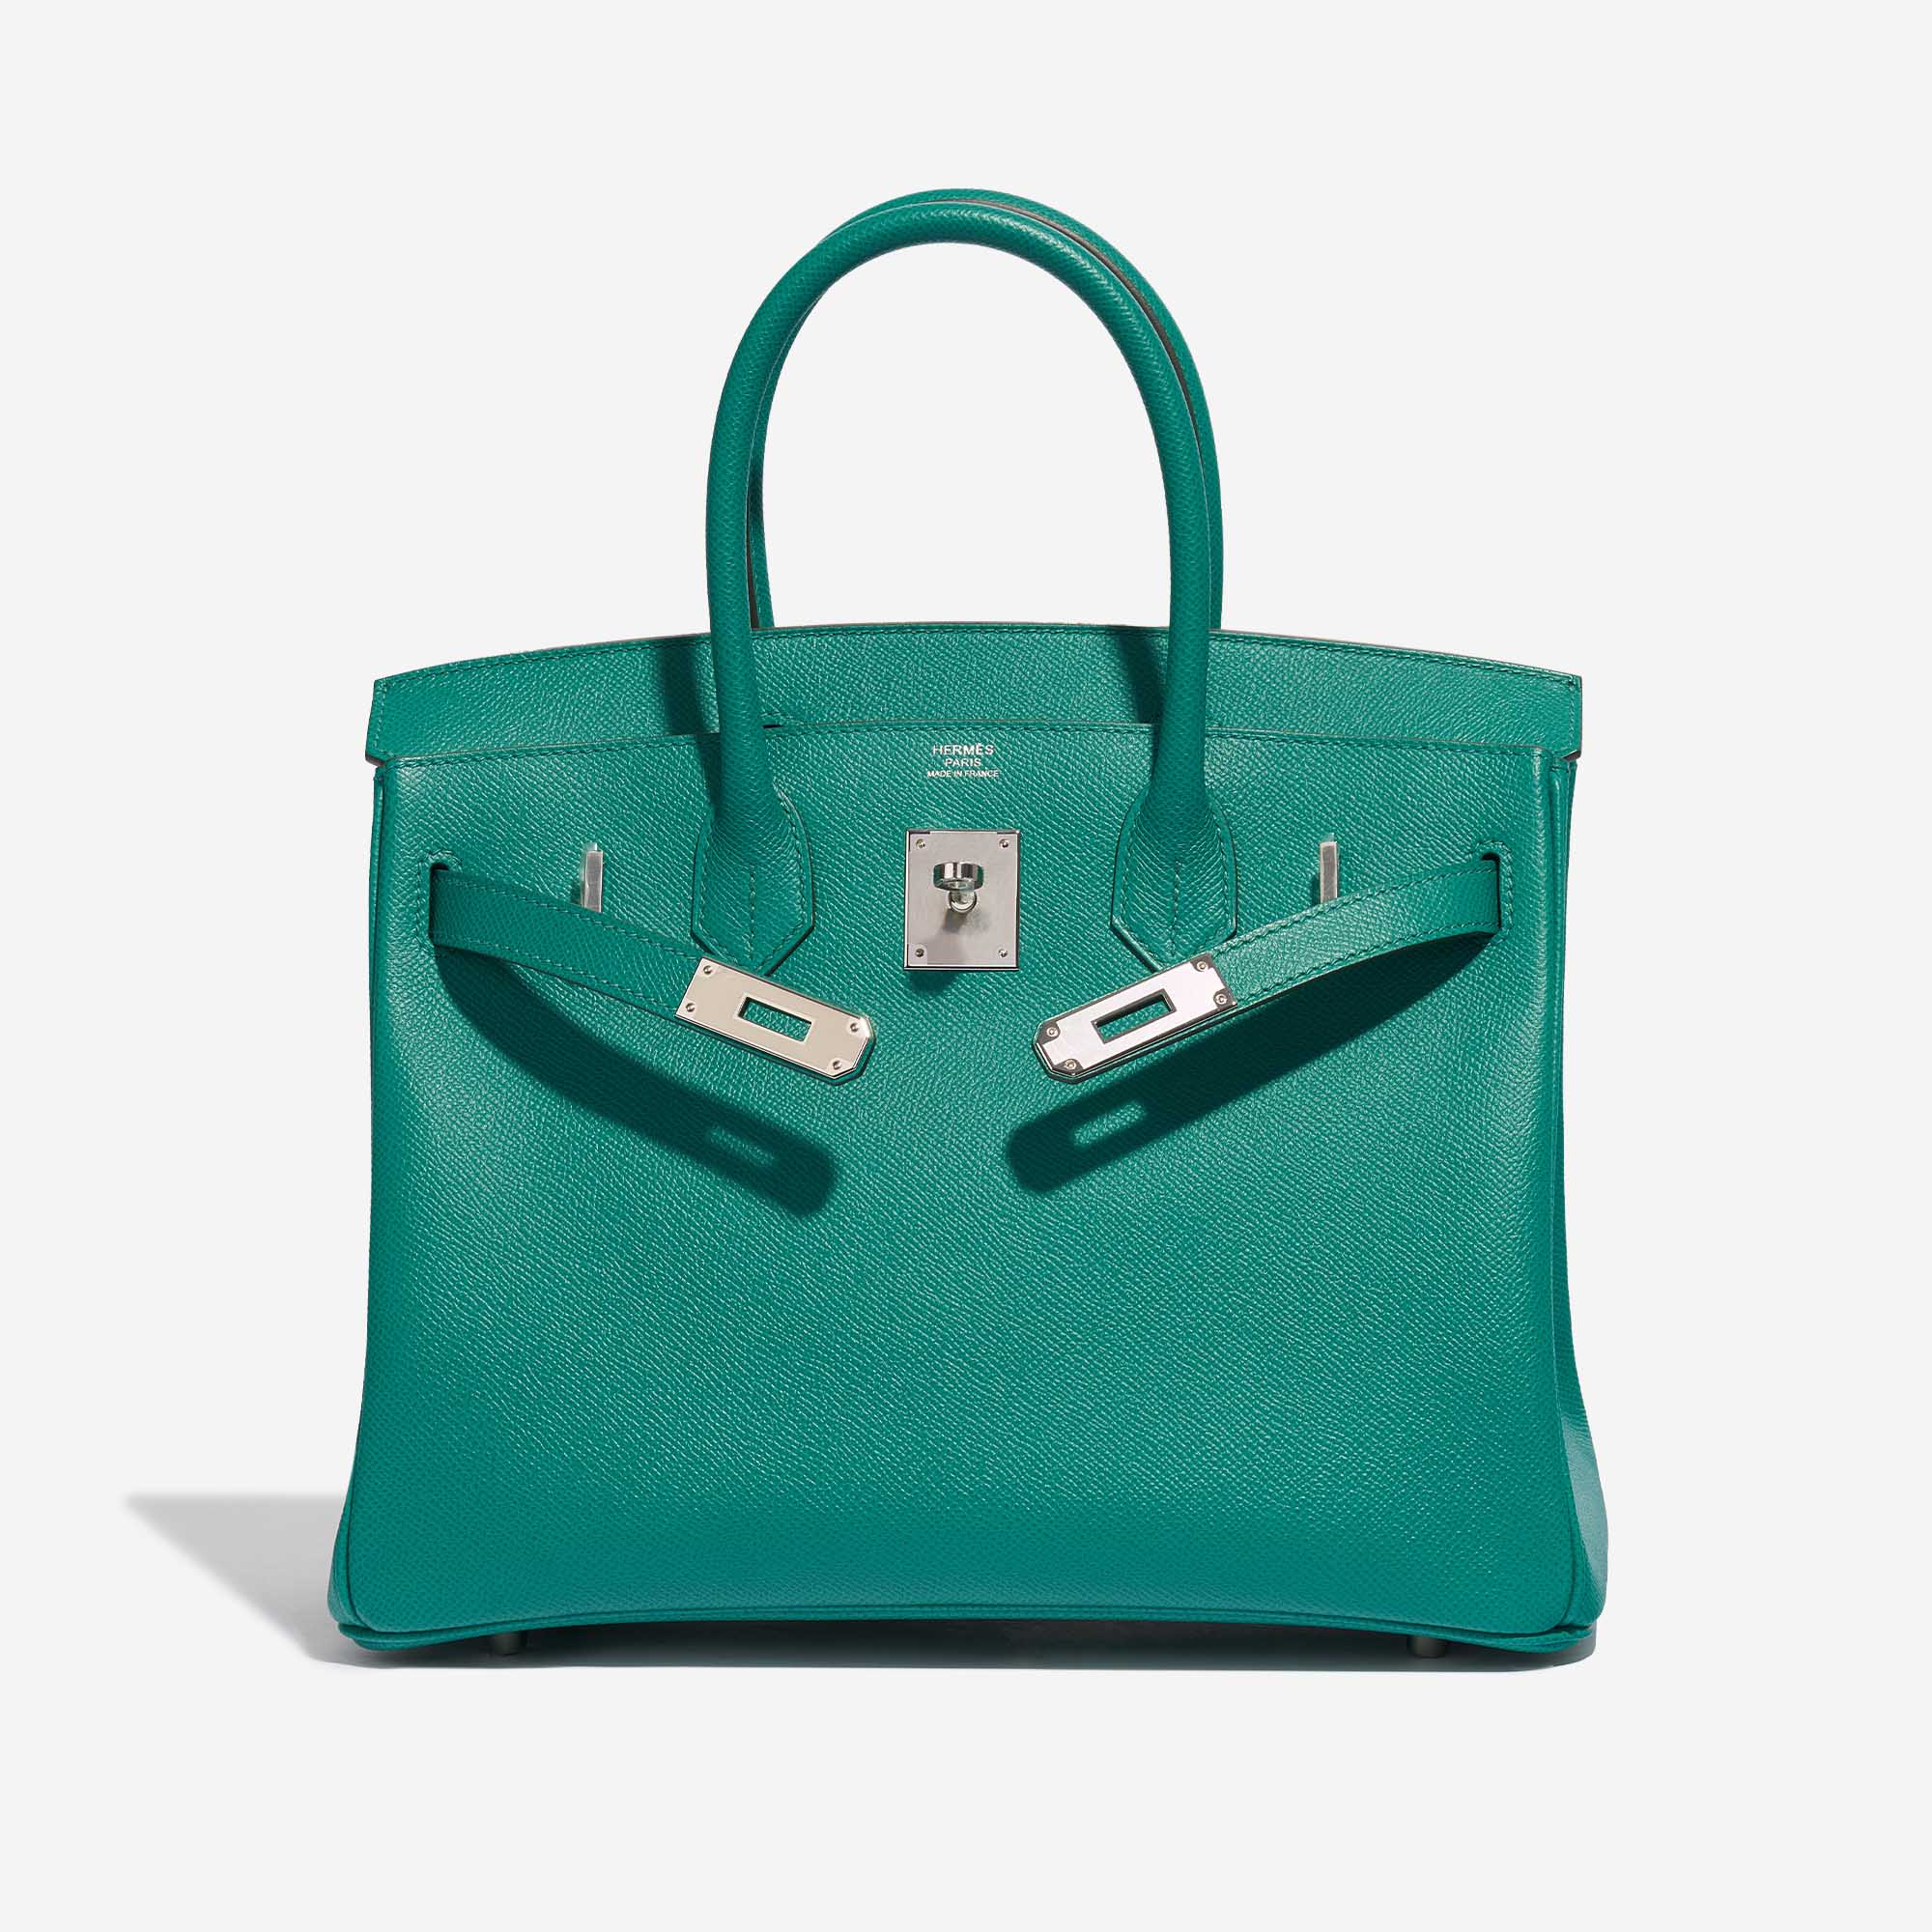 Pre-owned Hermès Tasche Birkin 30 Epsom Vert Jade Grün Front Open | Verkaufen Sie Ihre Designer-Tasche auf Saclab.com